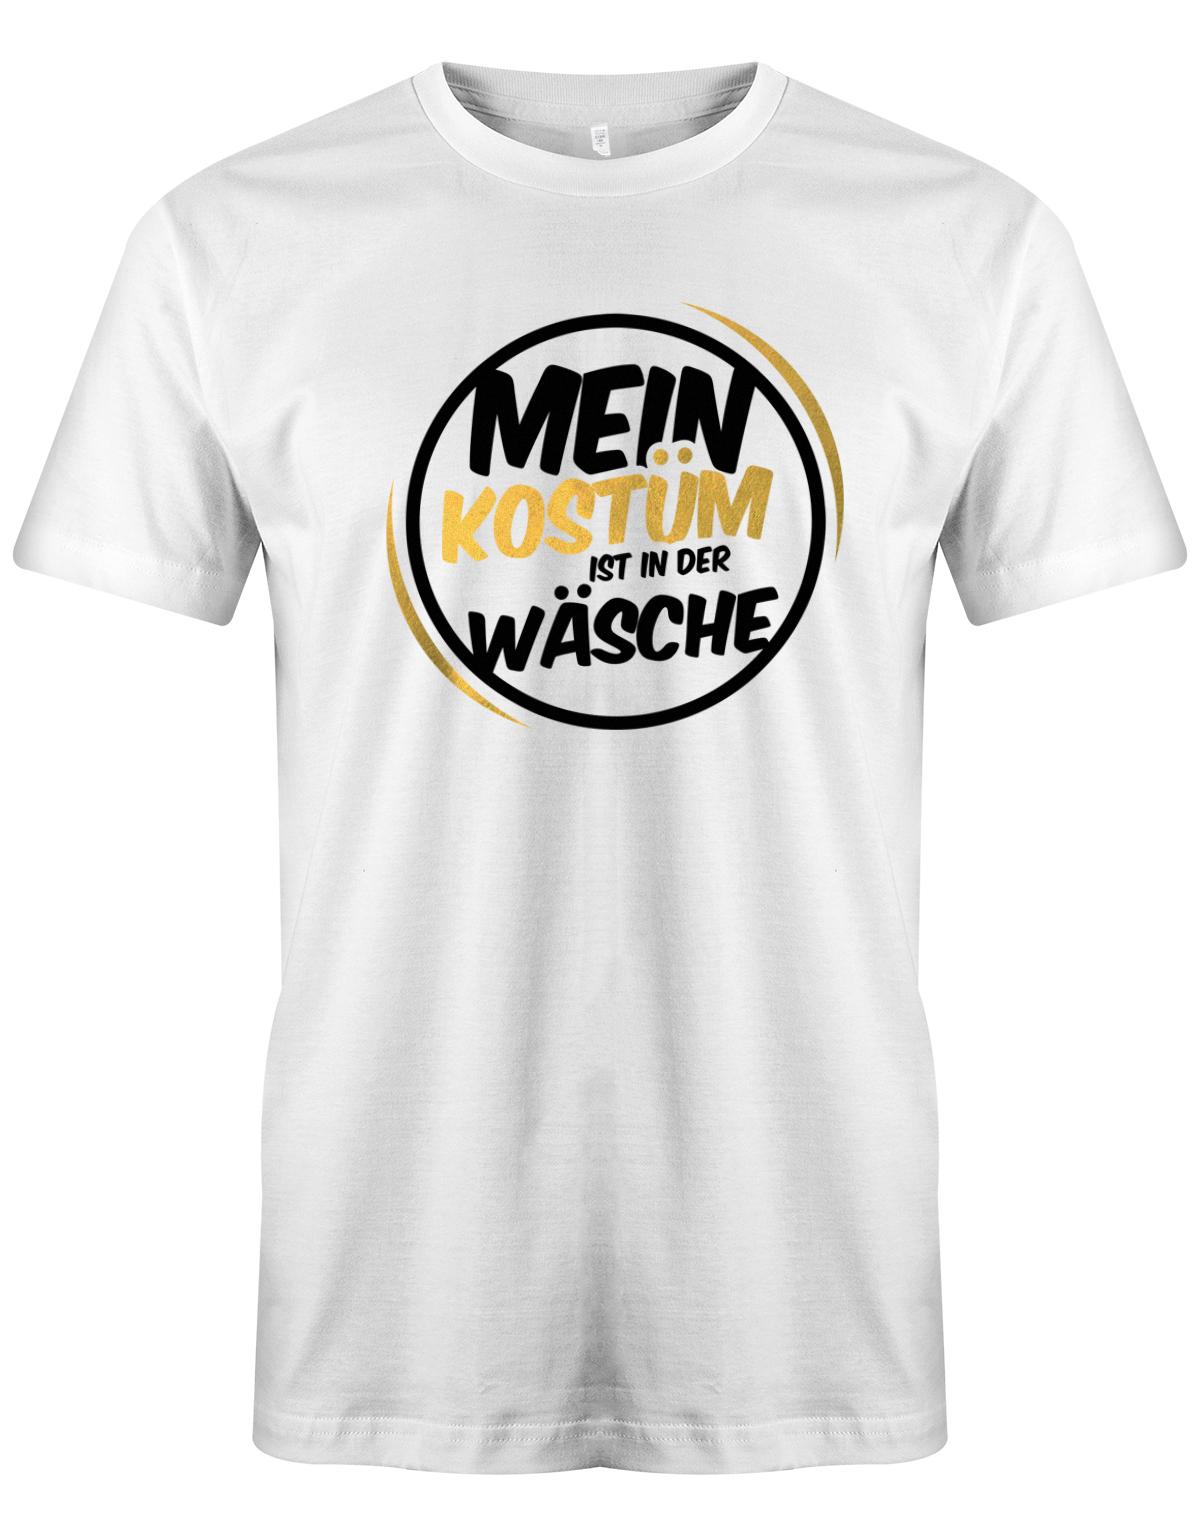 Mein-Kost-m-ist-in-der-W-sche-Fasching-Karneval-Kost-m-Herren-Shirt-Weiss